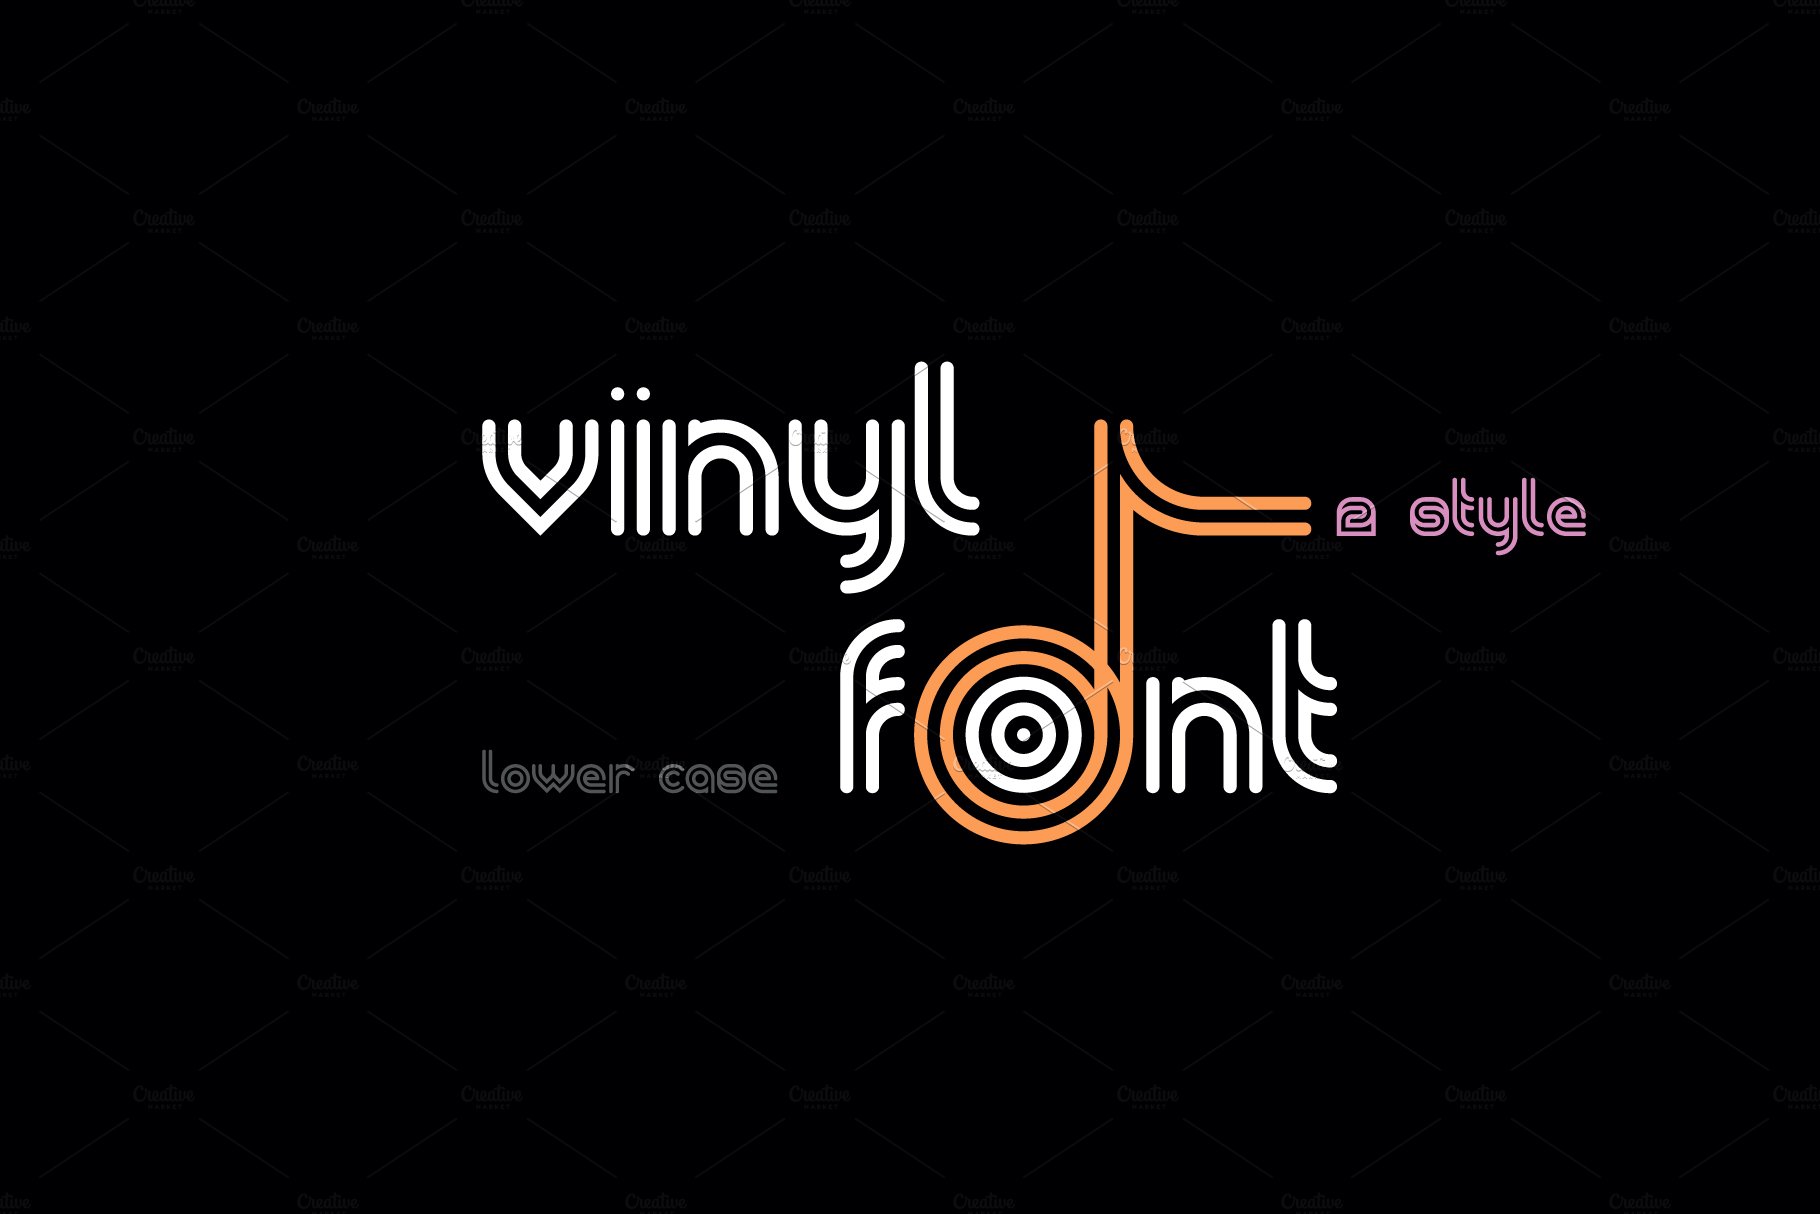 VinylFont cover image.